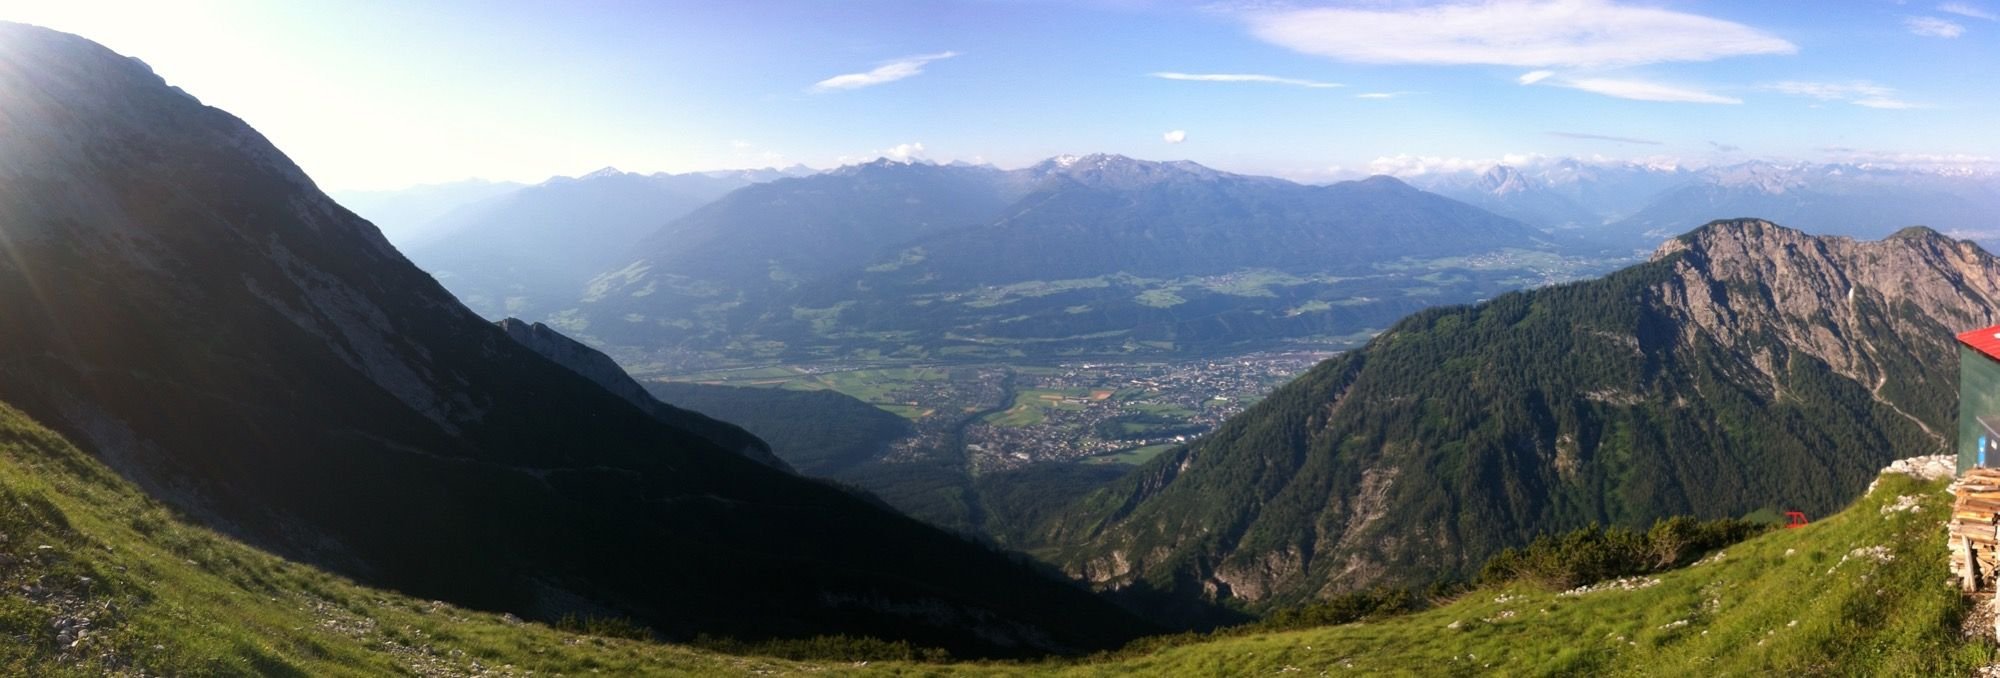 Bettelwurf - Panorama 1.jpg